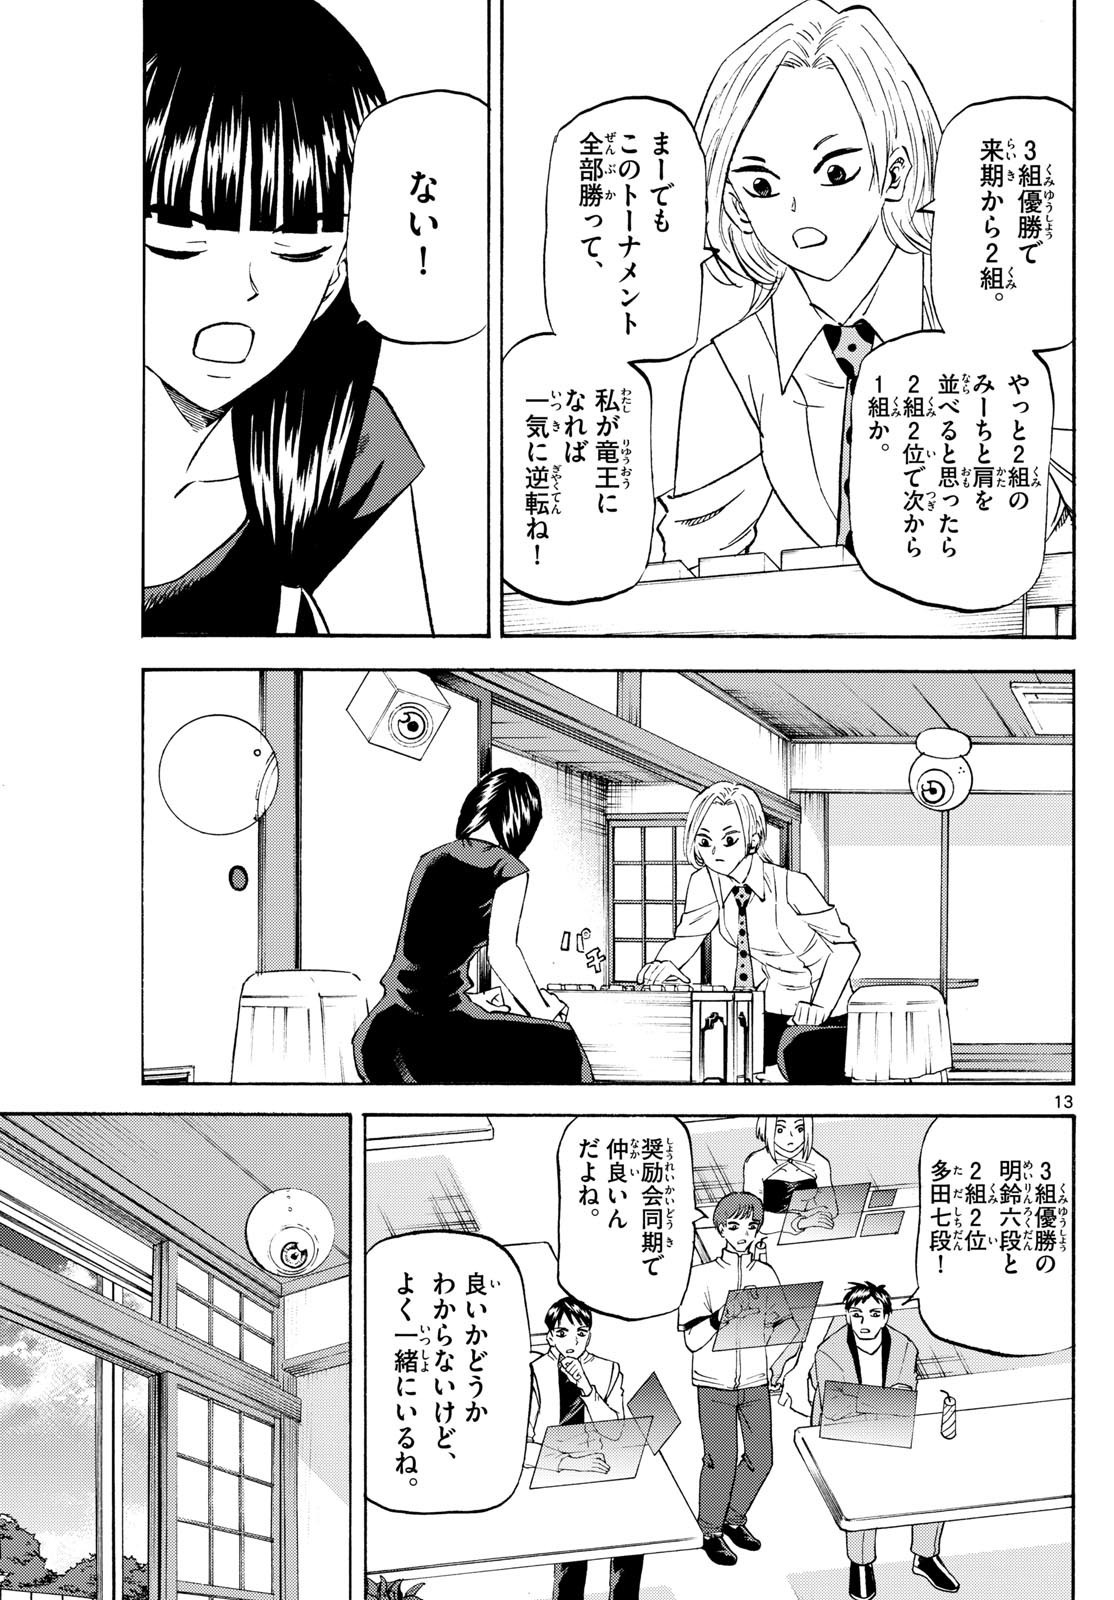 Tatsu to Ichigo - Chapter 199 - Page 13